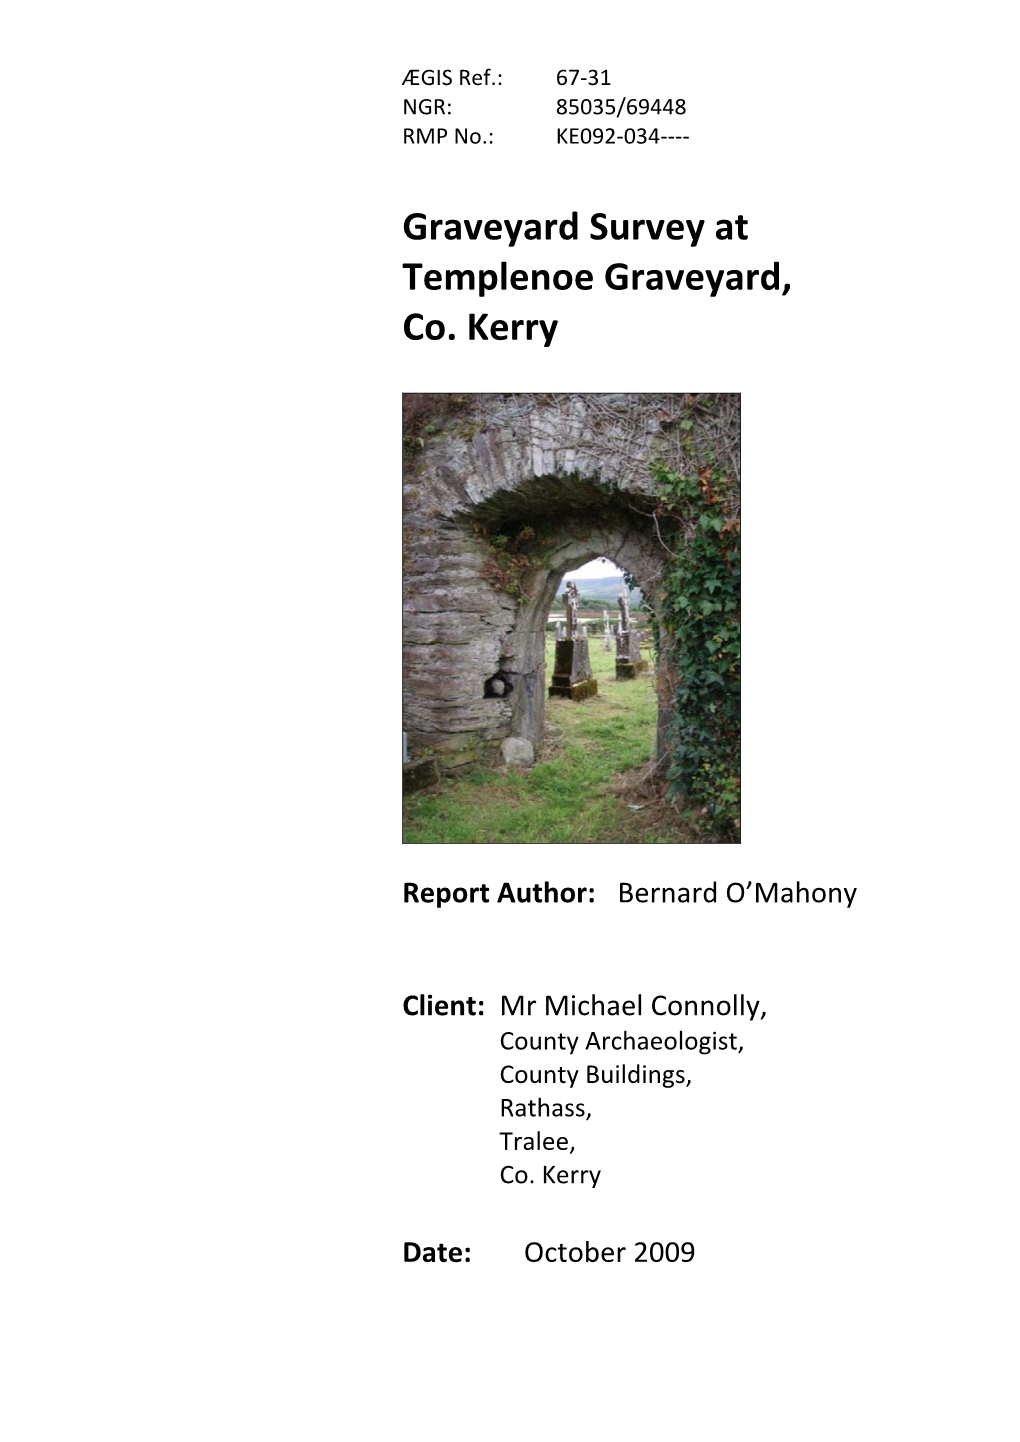 Templenoe, Co.Kerry, Graveyard Survey